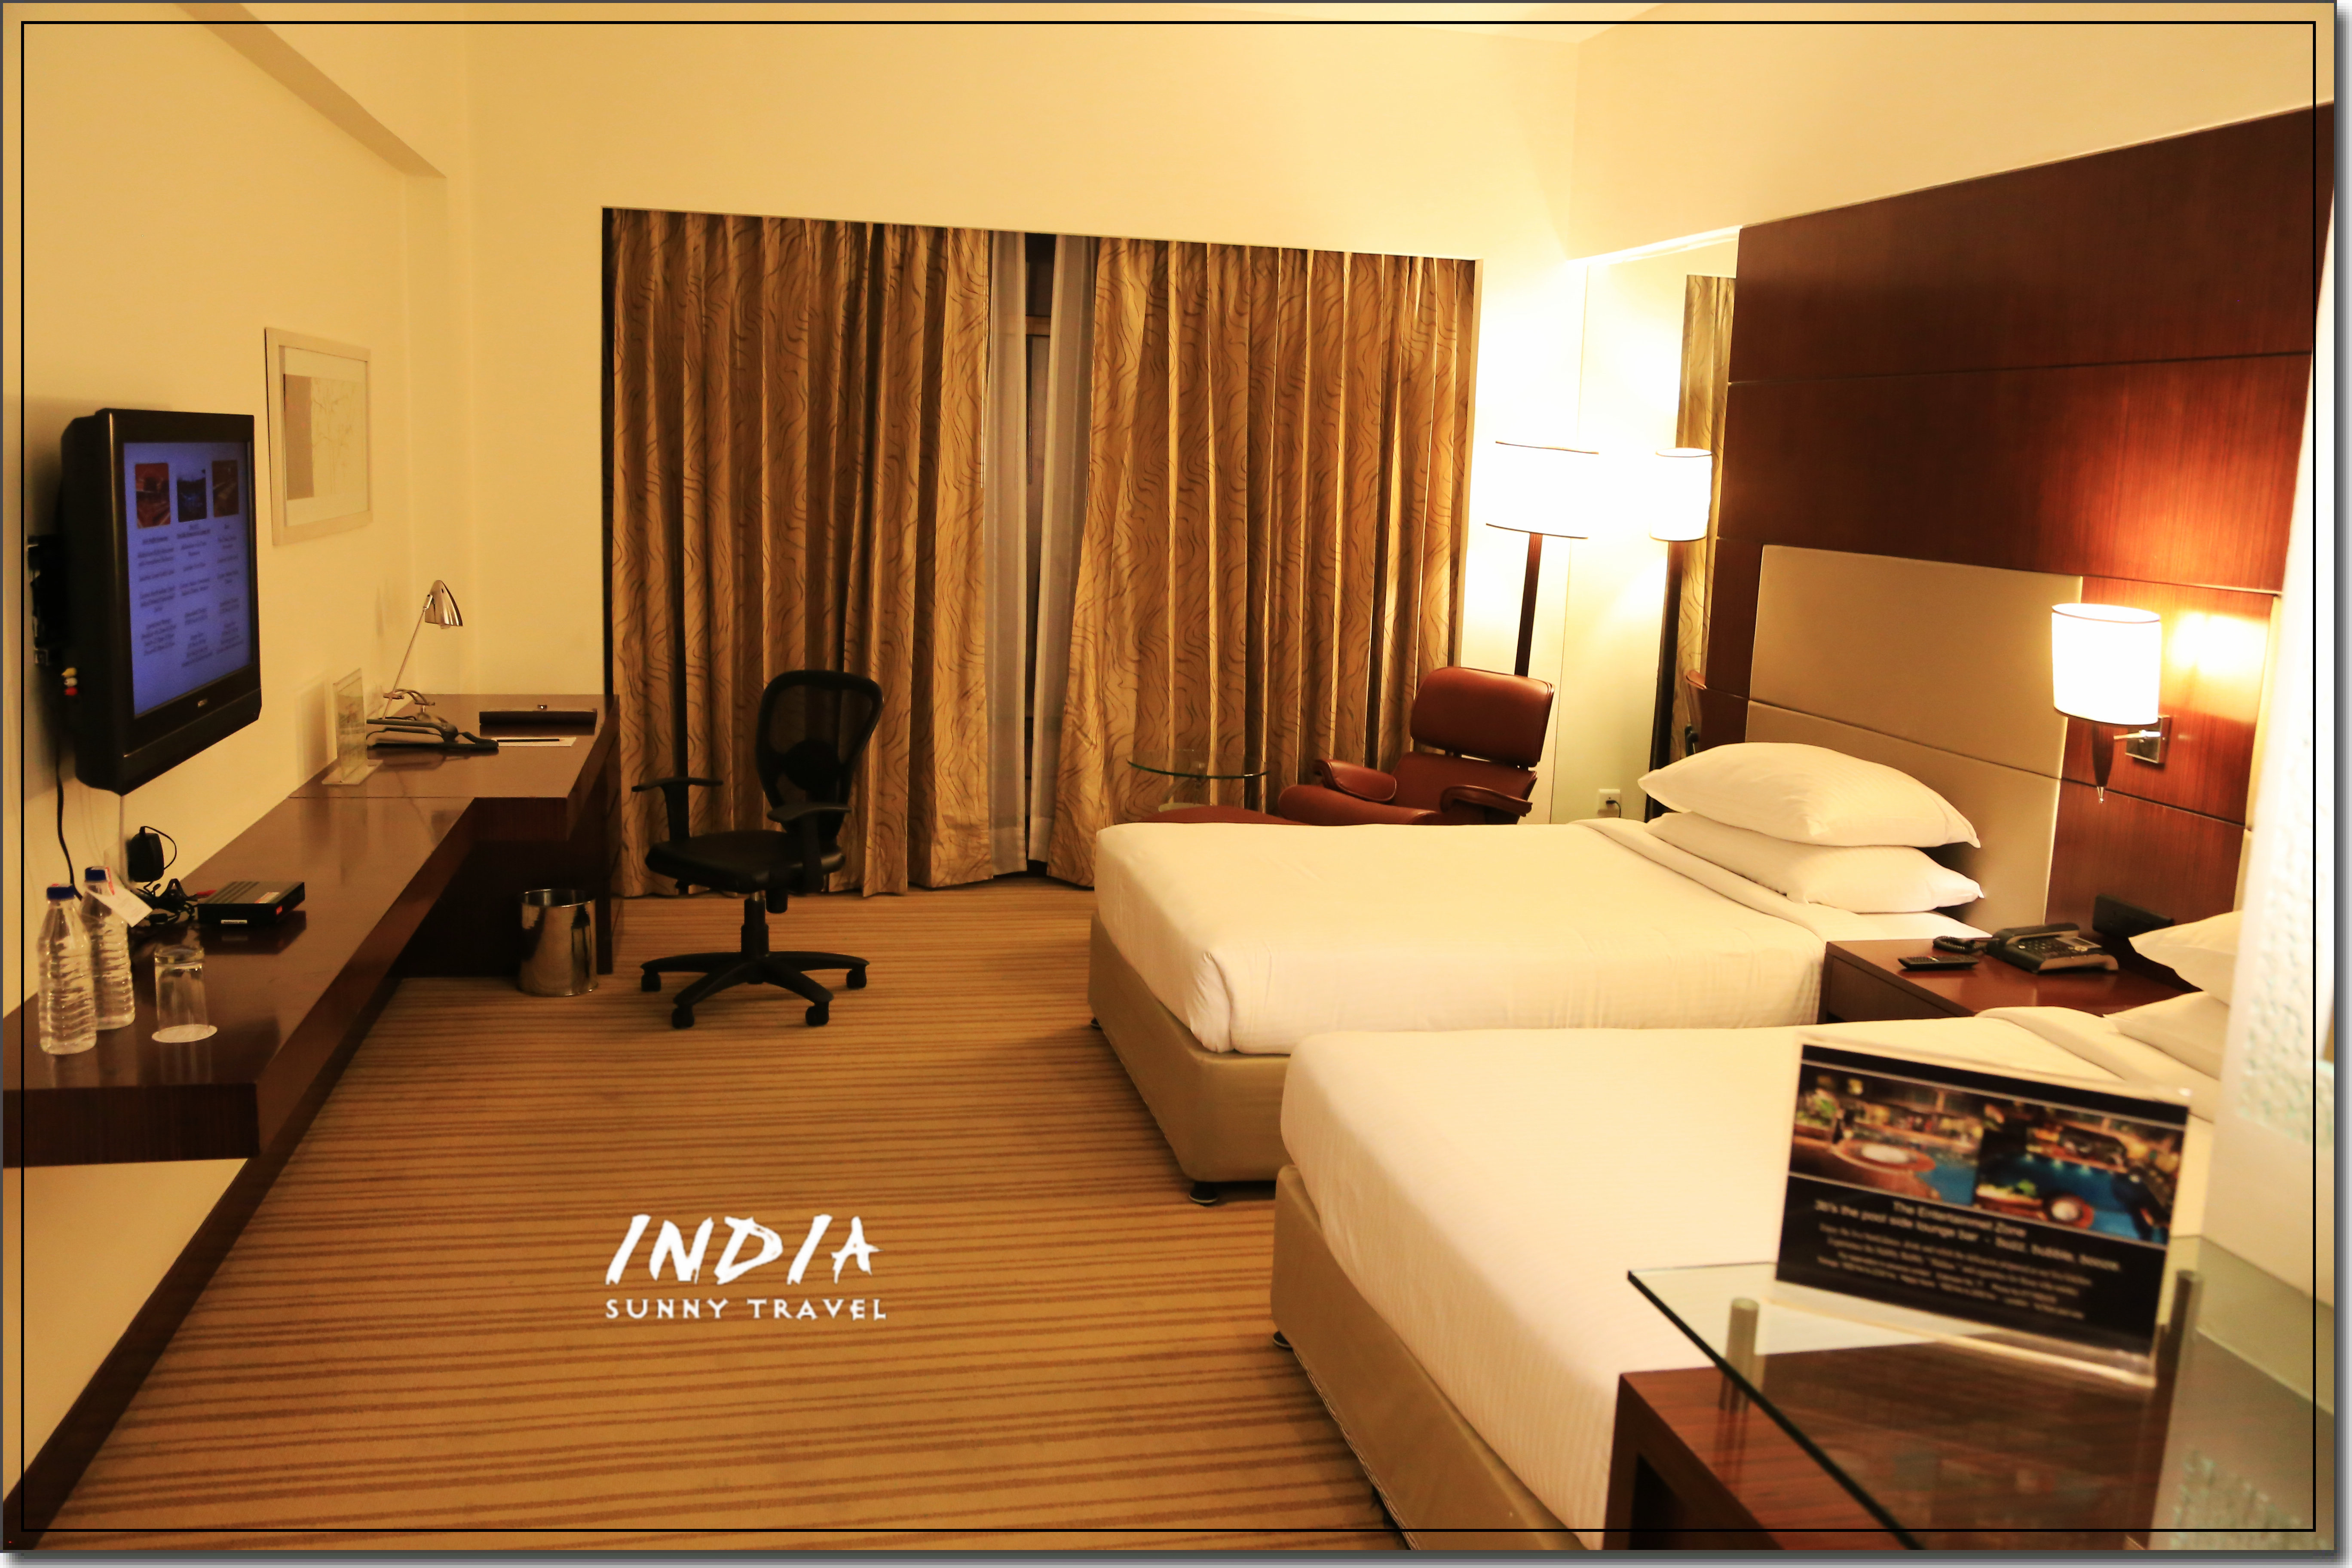 飞到德里已经是凌晨了，印度的入关效率很慢，到Country Inn & Suites酒店已经很晚了，